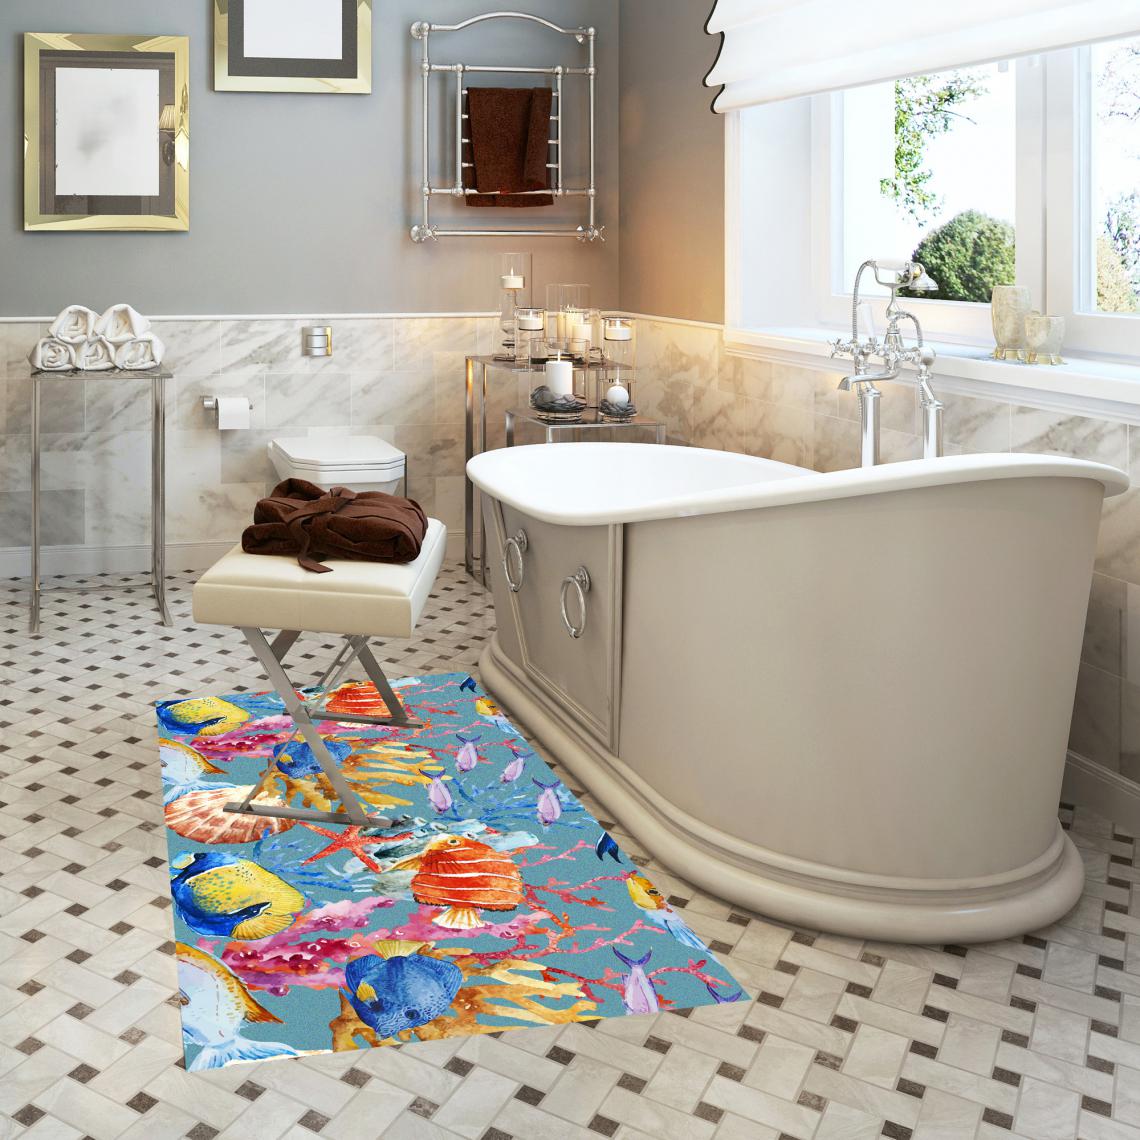 Alter - Tapis de salle de bain, 100% Made in Italy, Tapis antitache avec impression numérique, Tapis antidérapant et lavable, Modèle Aleesha, cm 62x52 - Tapis